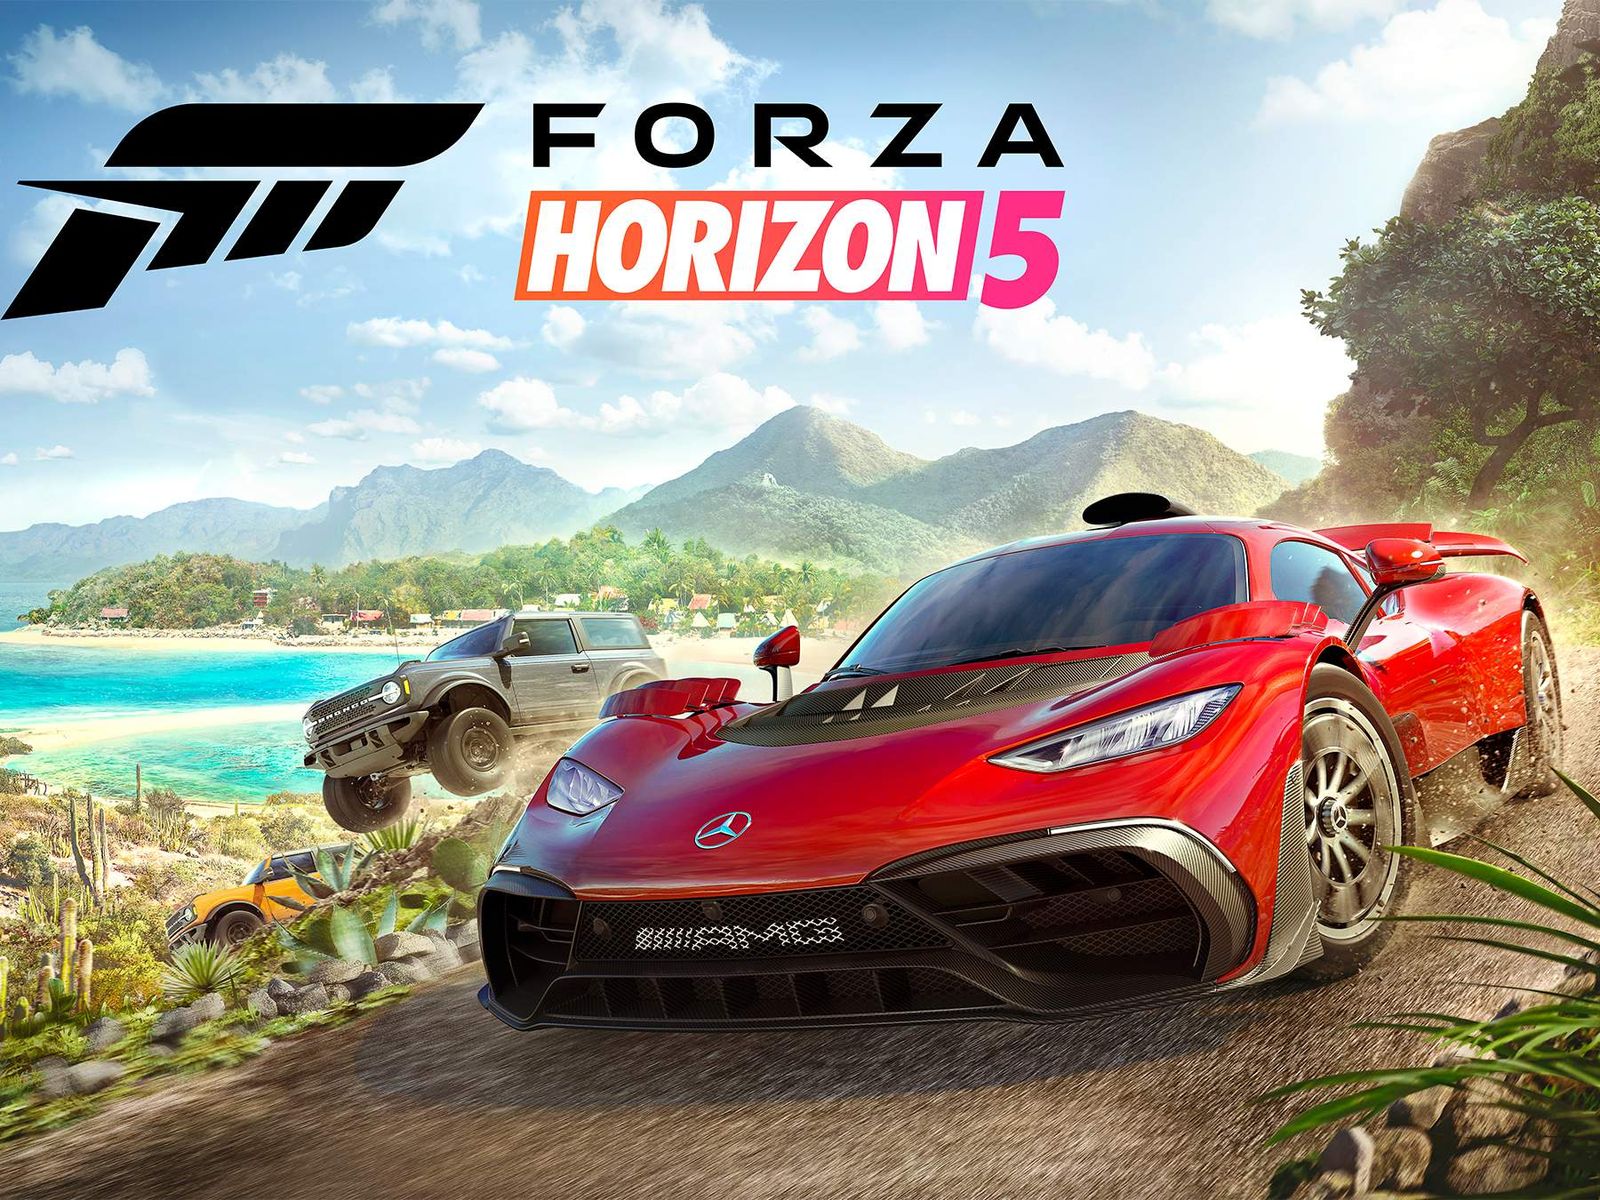 Análisis Forza Horizon 3 - Xbox One, PC